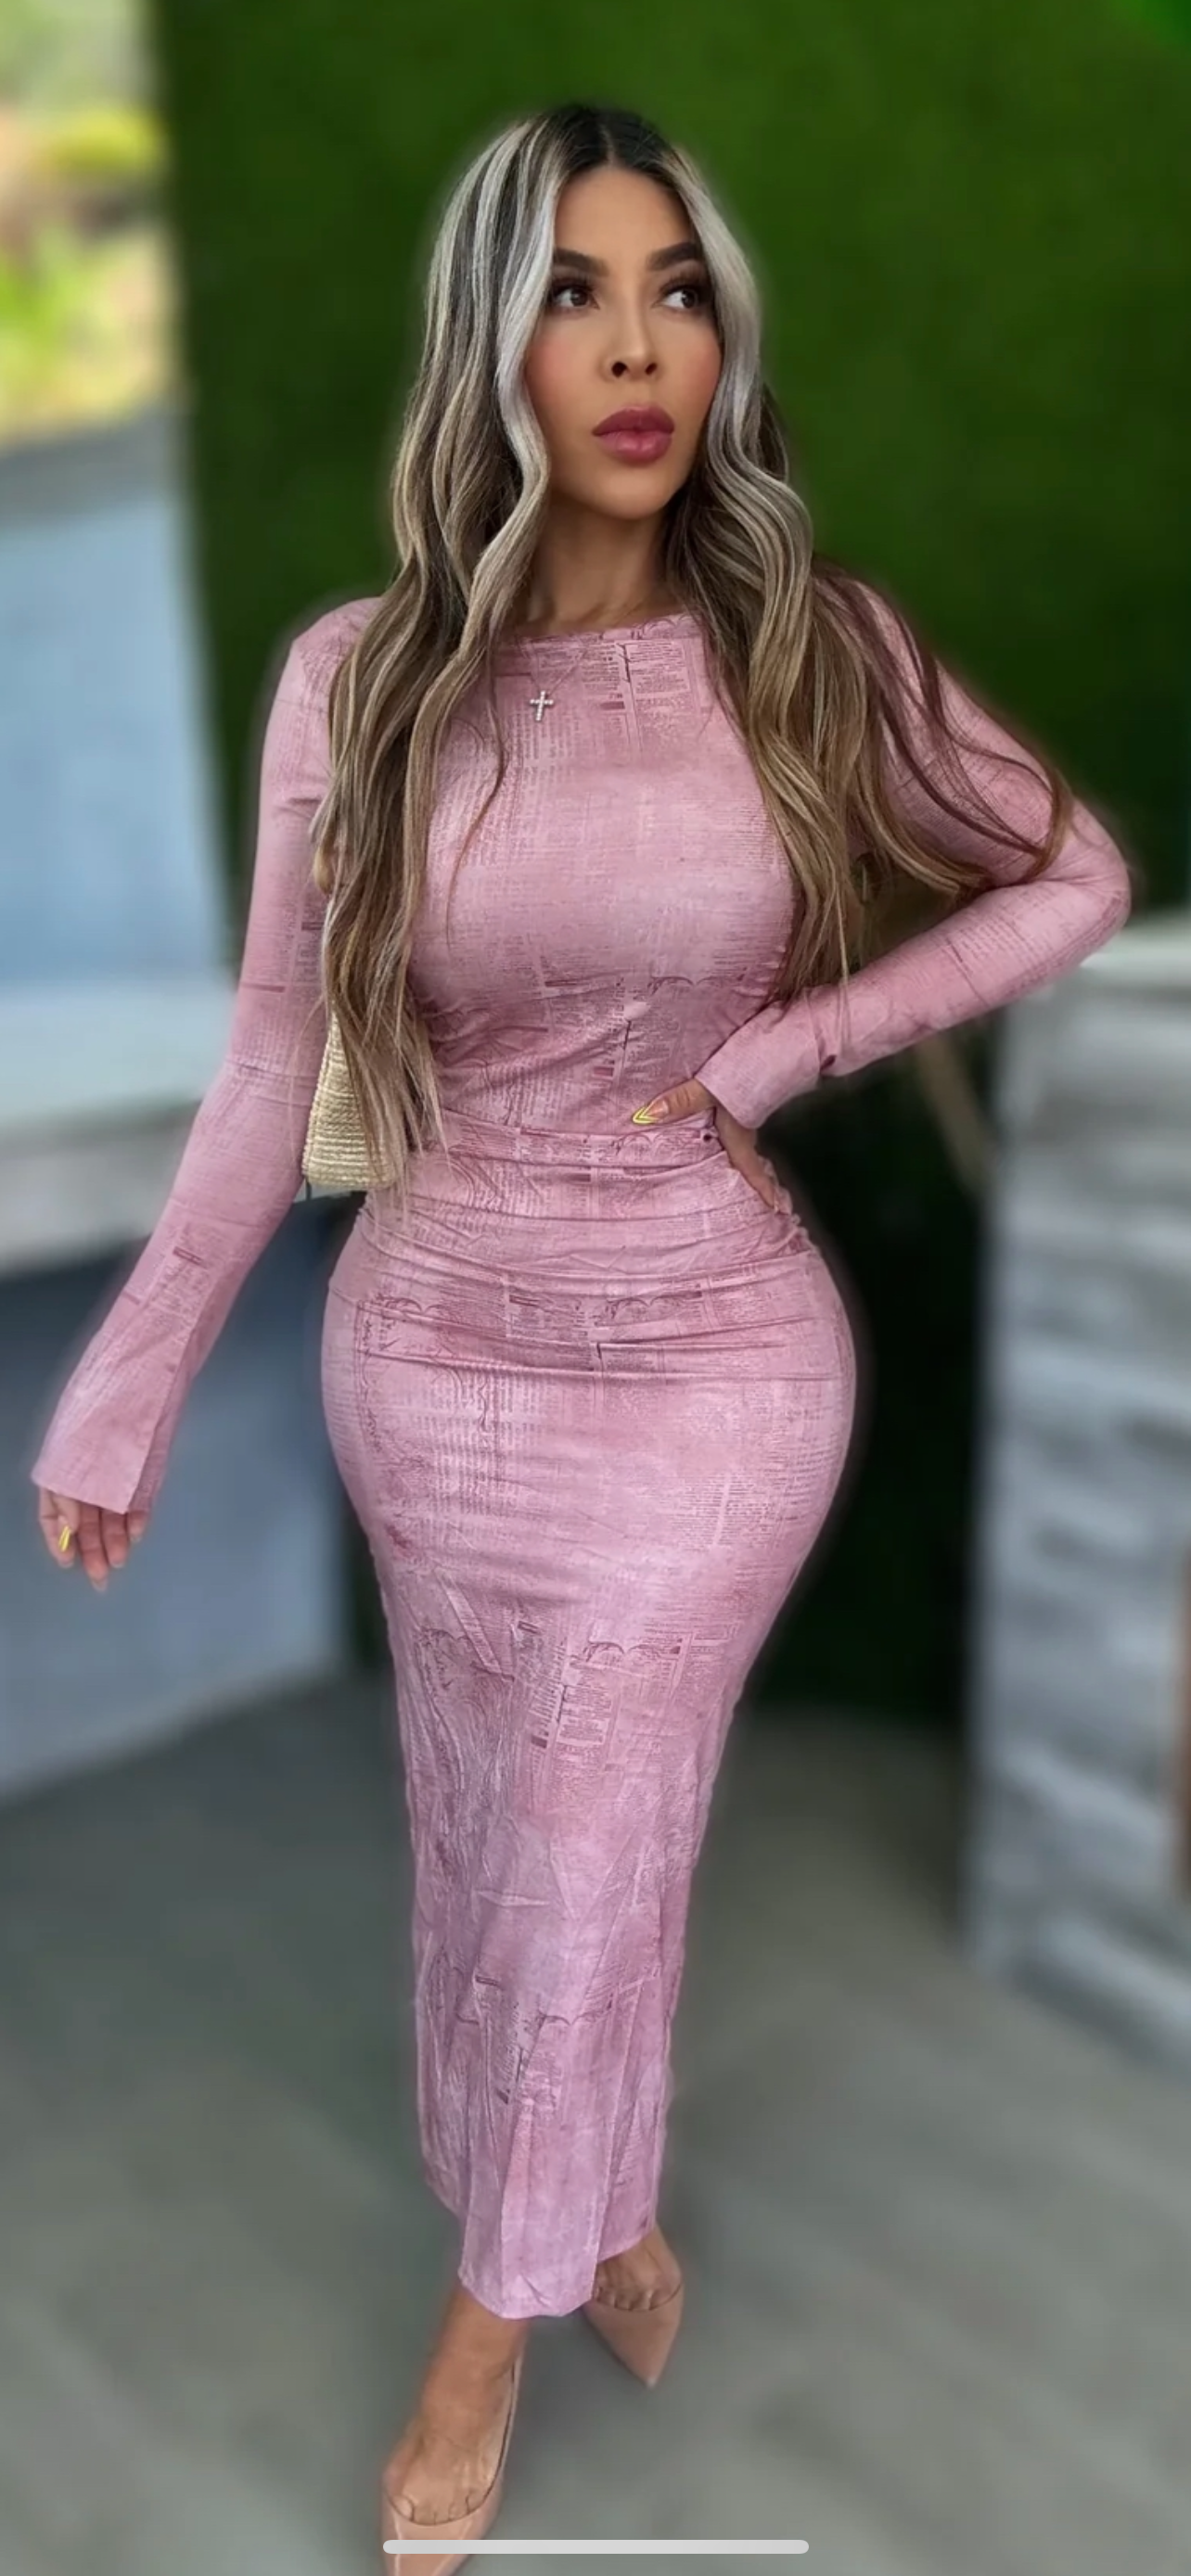 Miranda midi dress - pink